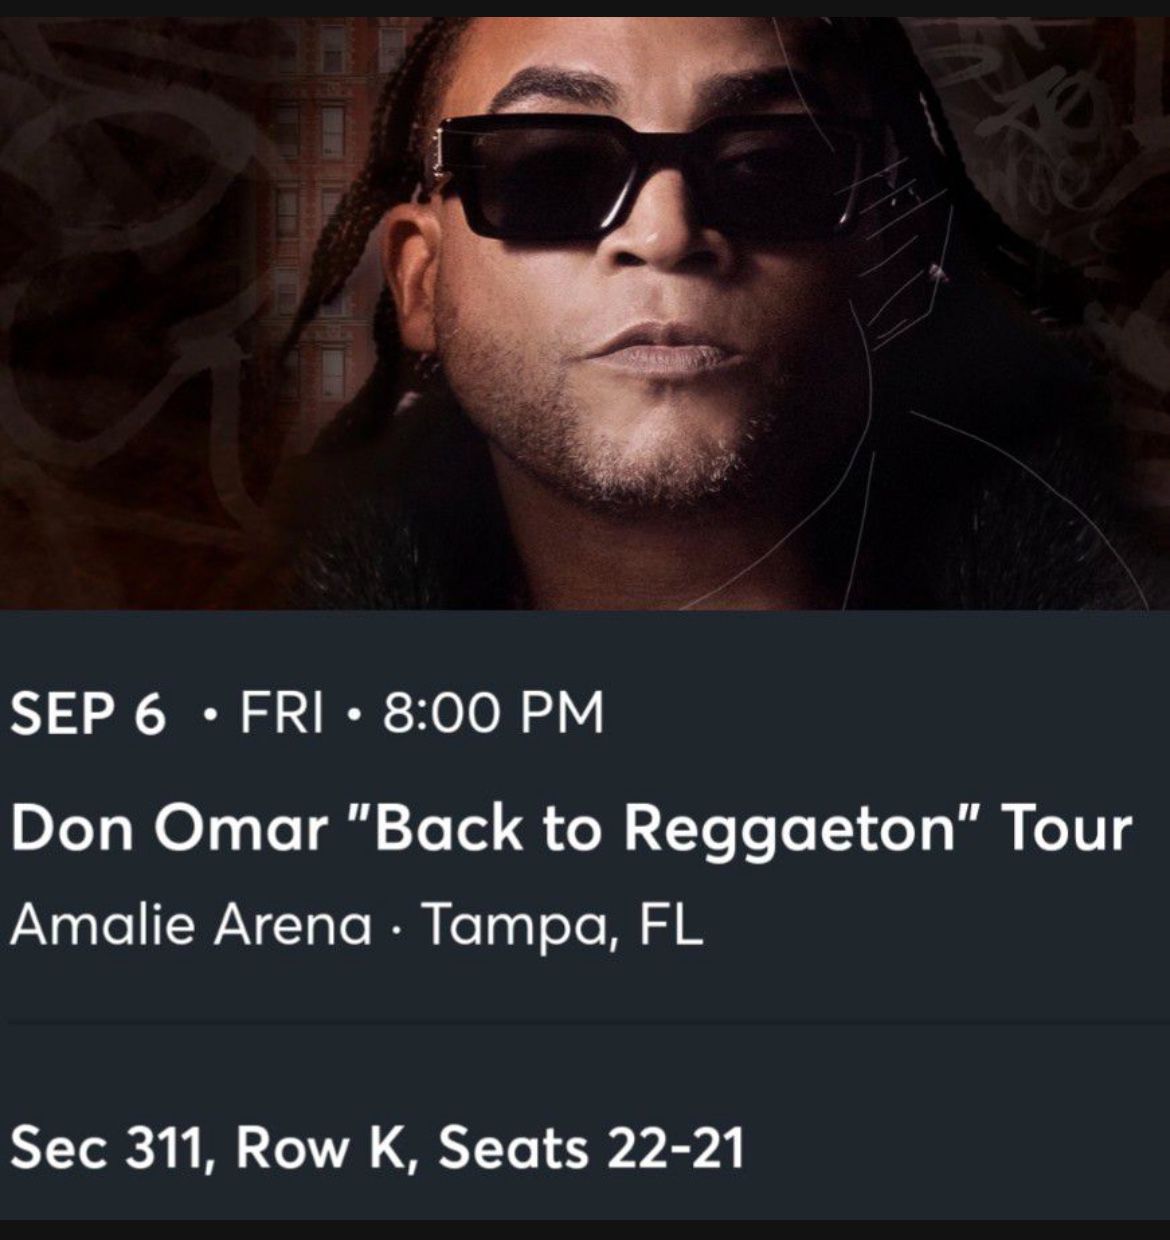 Don Omar "Back To Reggaeton" Tour Tickets (2)